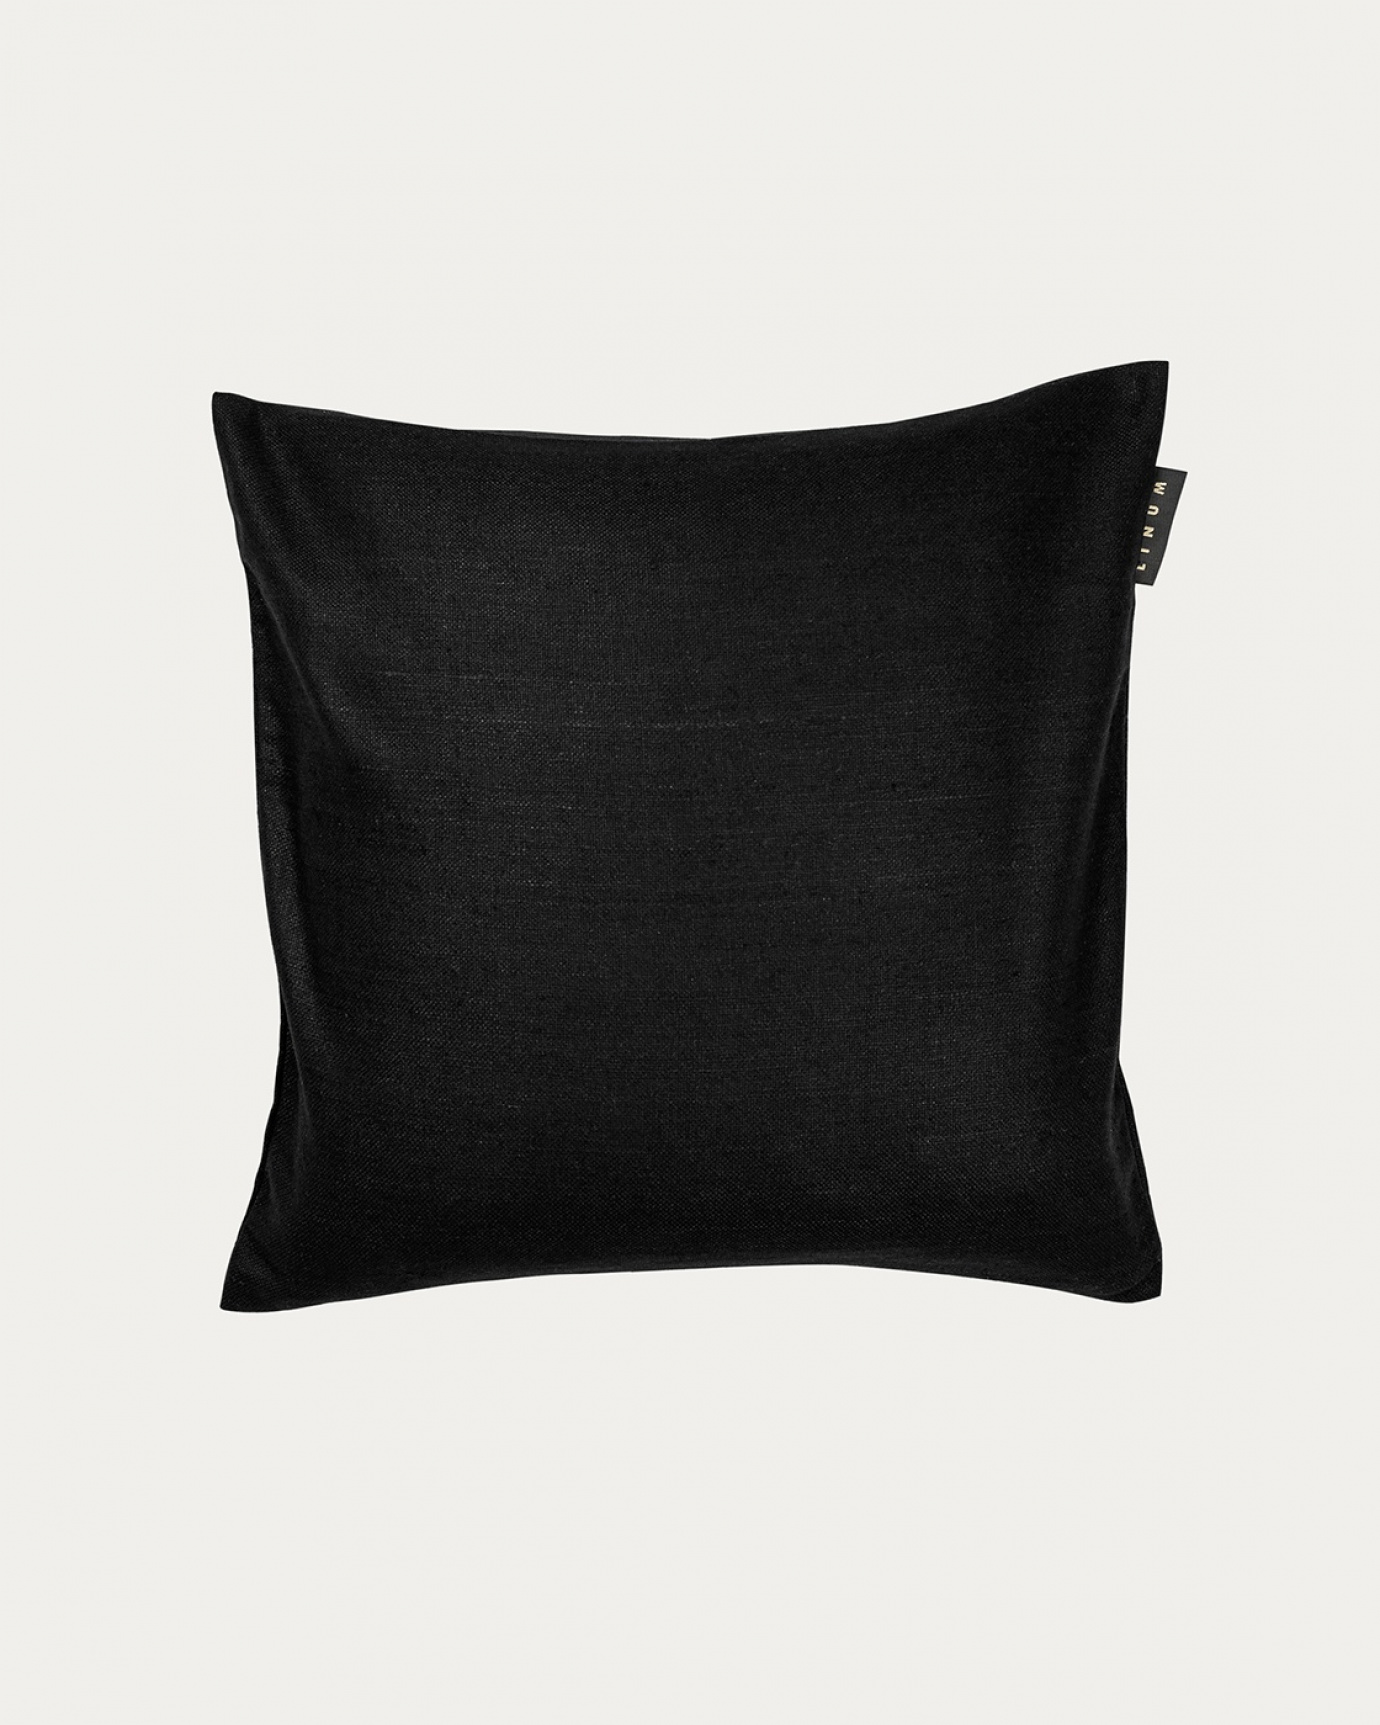 Produktbild schwarz SETA Kissenhülle aus 100% Rohseide mit schönem Glanz von LINUM DESIGN. Größe 40x40 cm.